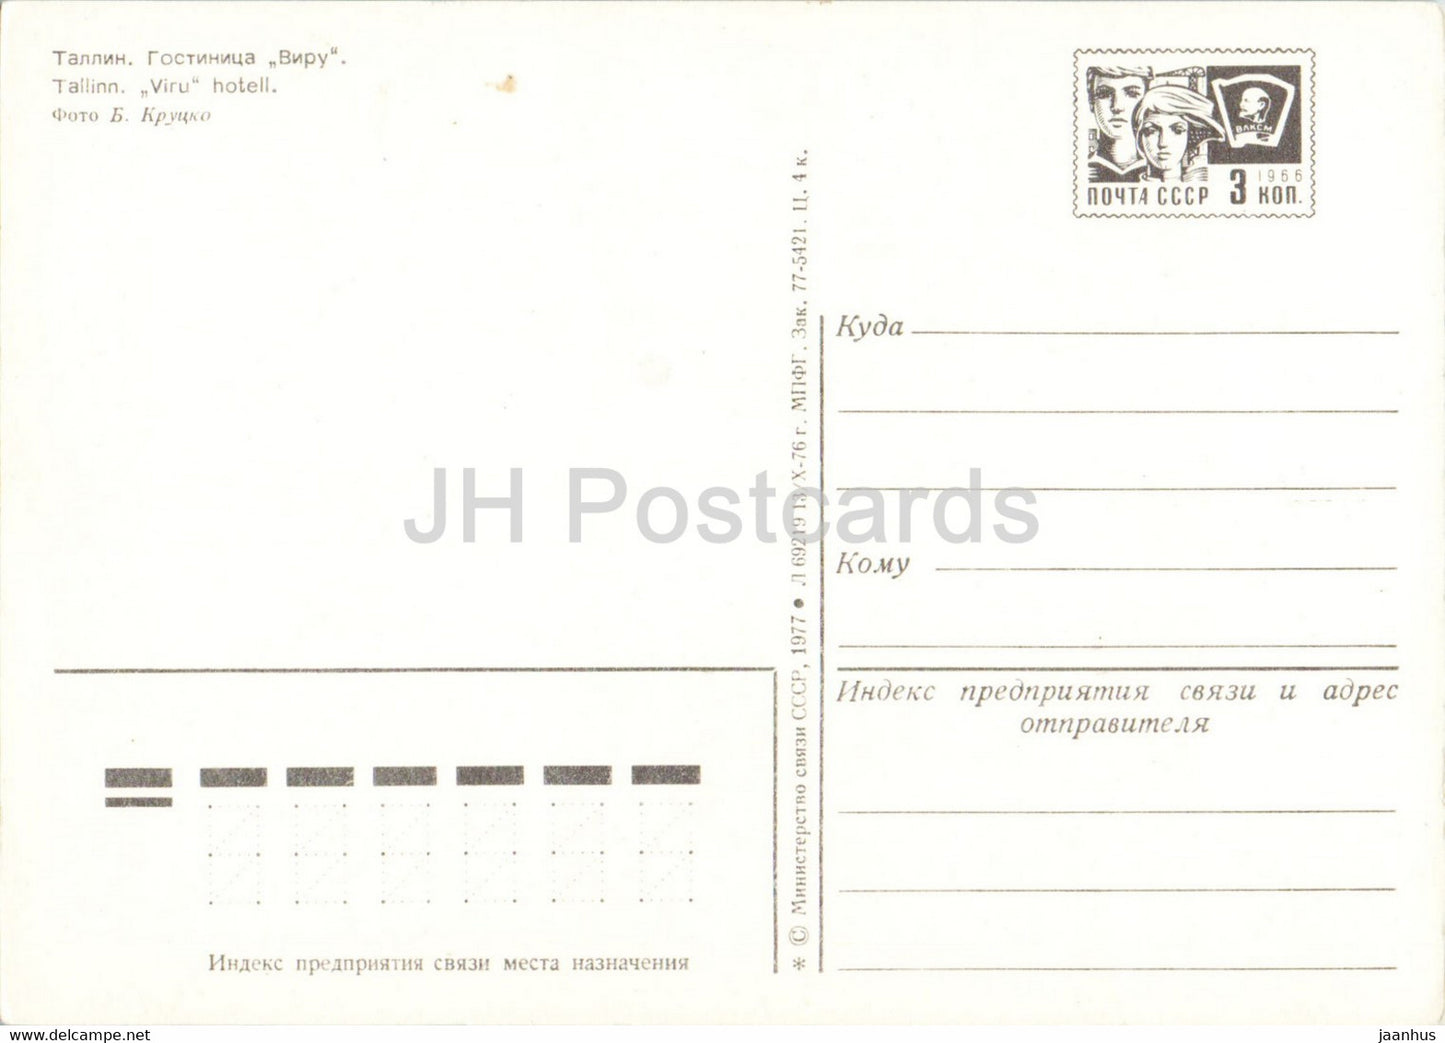 Tallinn - hotel Viru - postal stationery - 1977 - Estonia USSR - unused